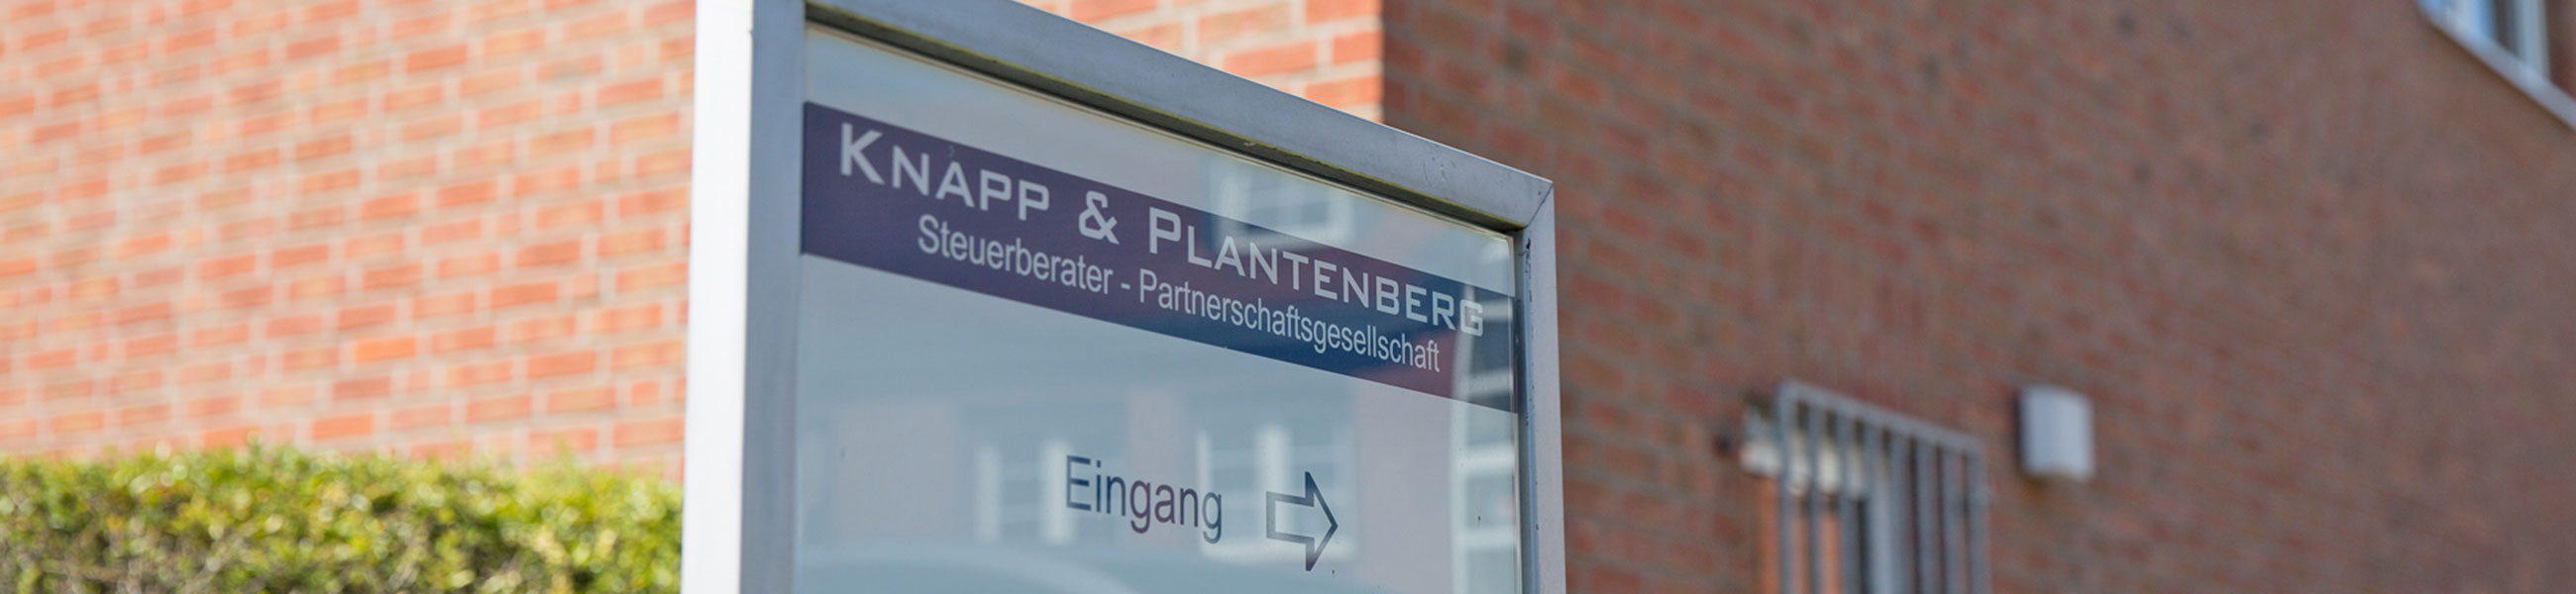 Knapp & Plantenberg Steuerberater in Ratingen